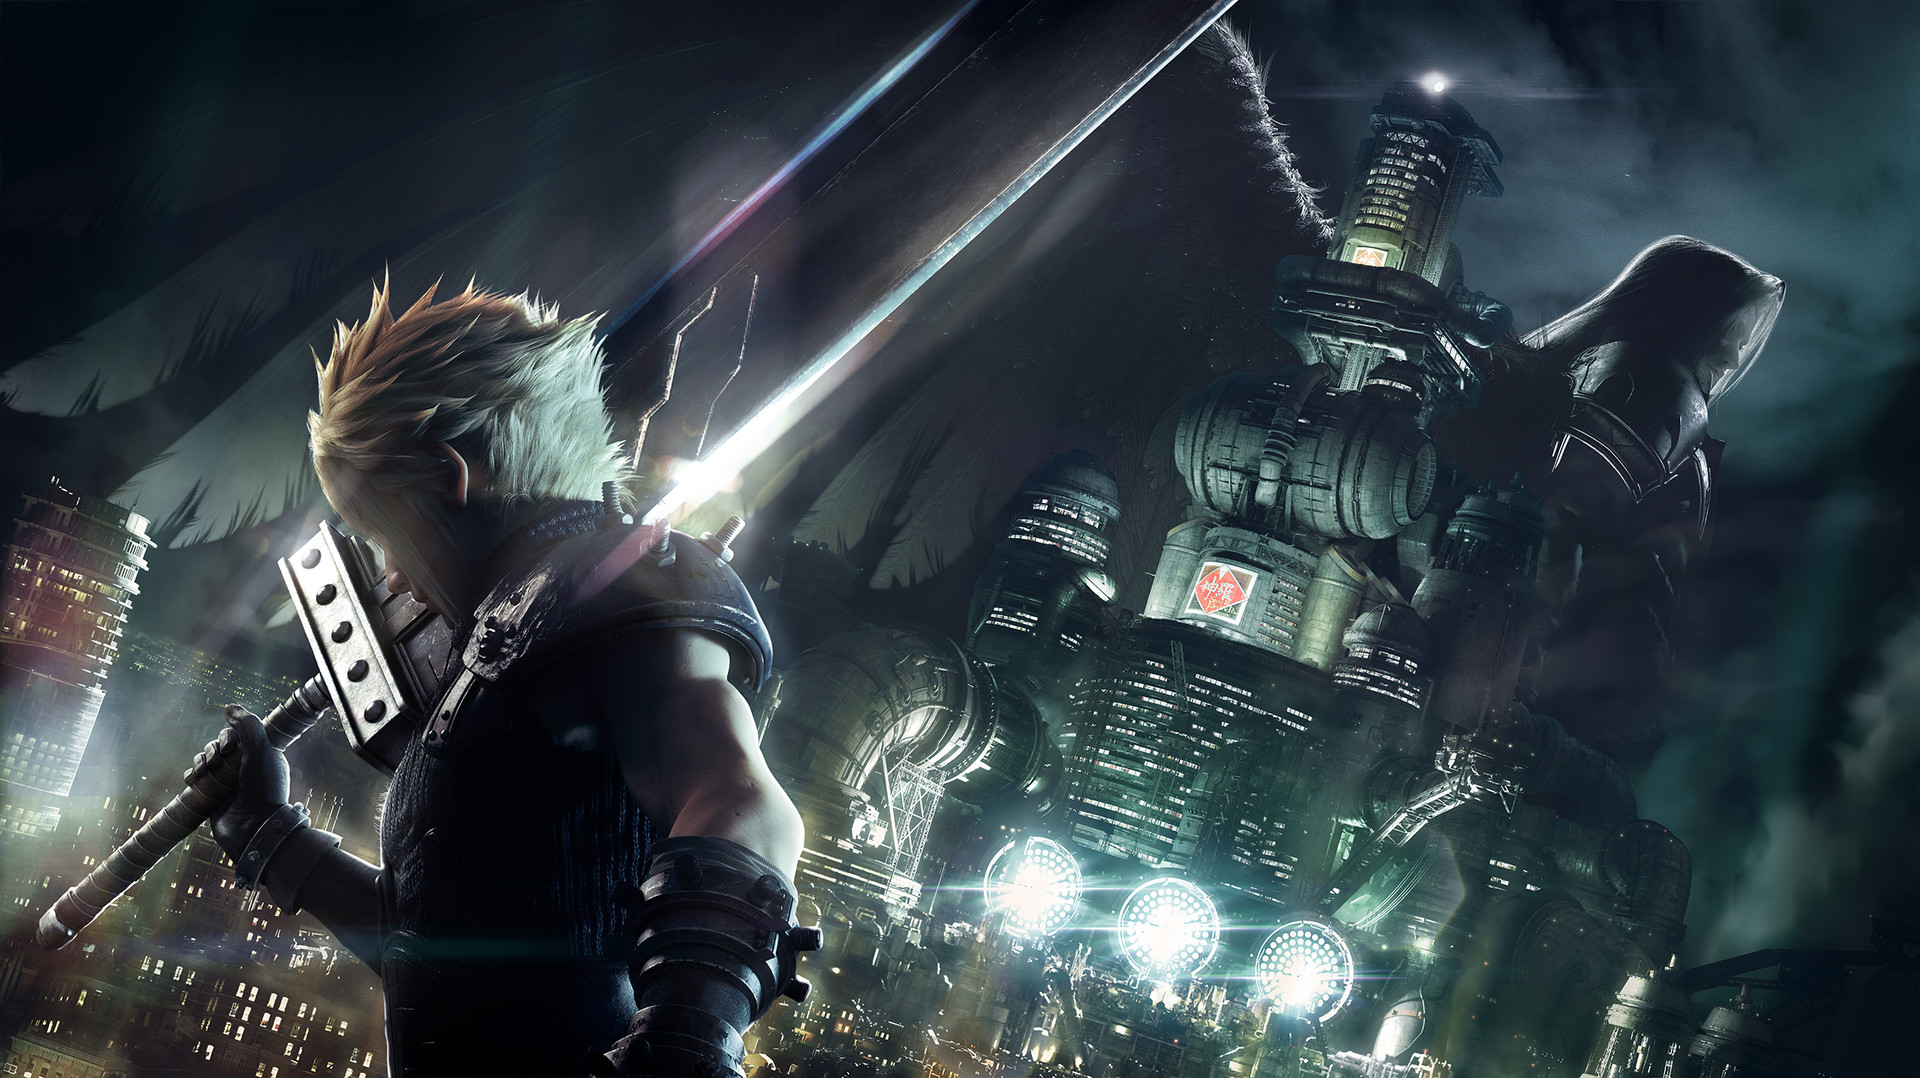 Demo Final Fantasy VII Remake potvrzeno, avšak zatím jen pro vybrané